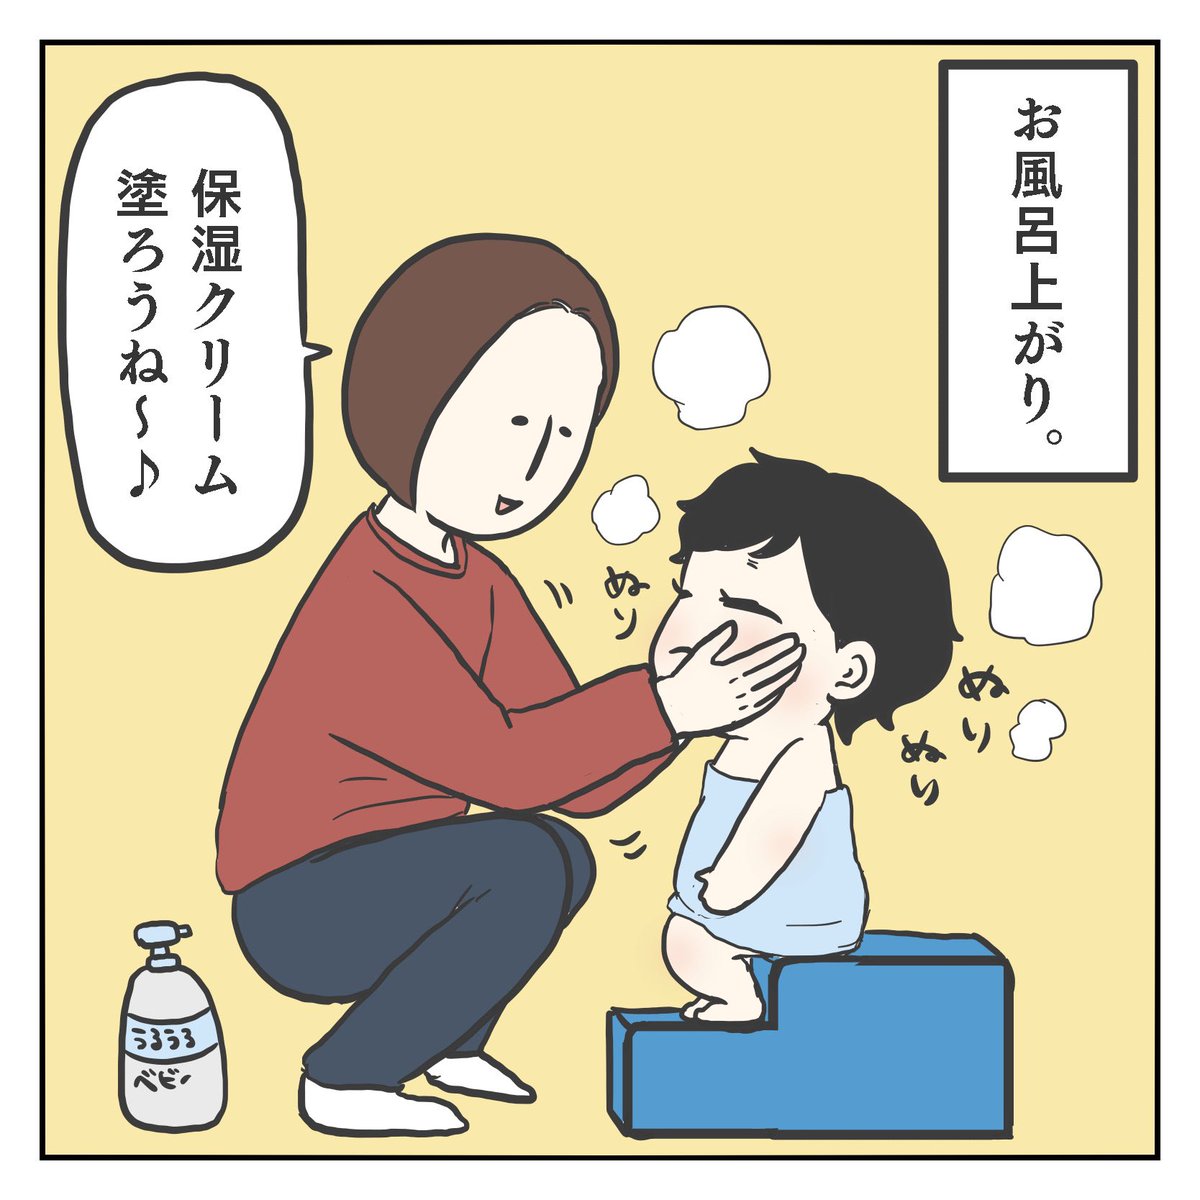 ぬりぬりすゆ!(1/3)

#育児漫画 